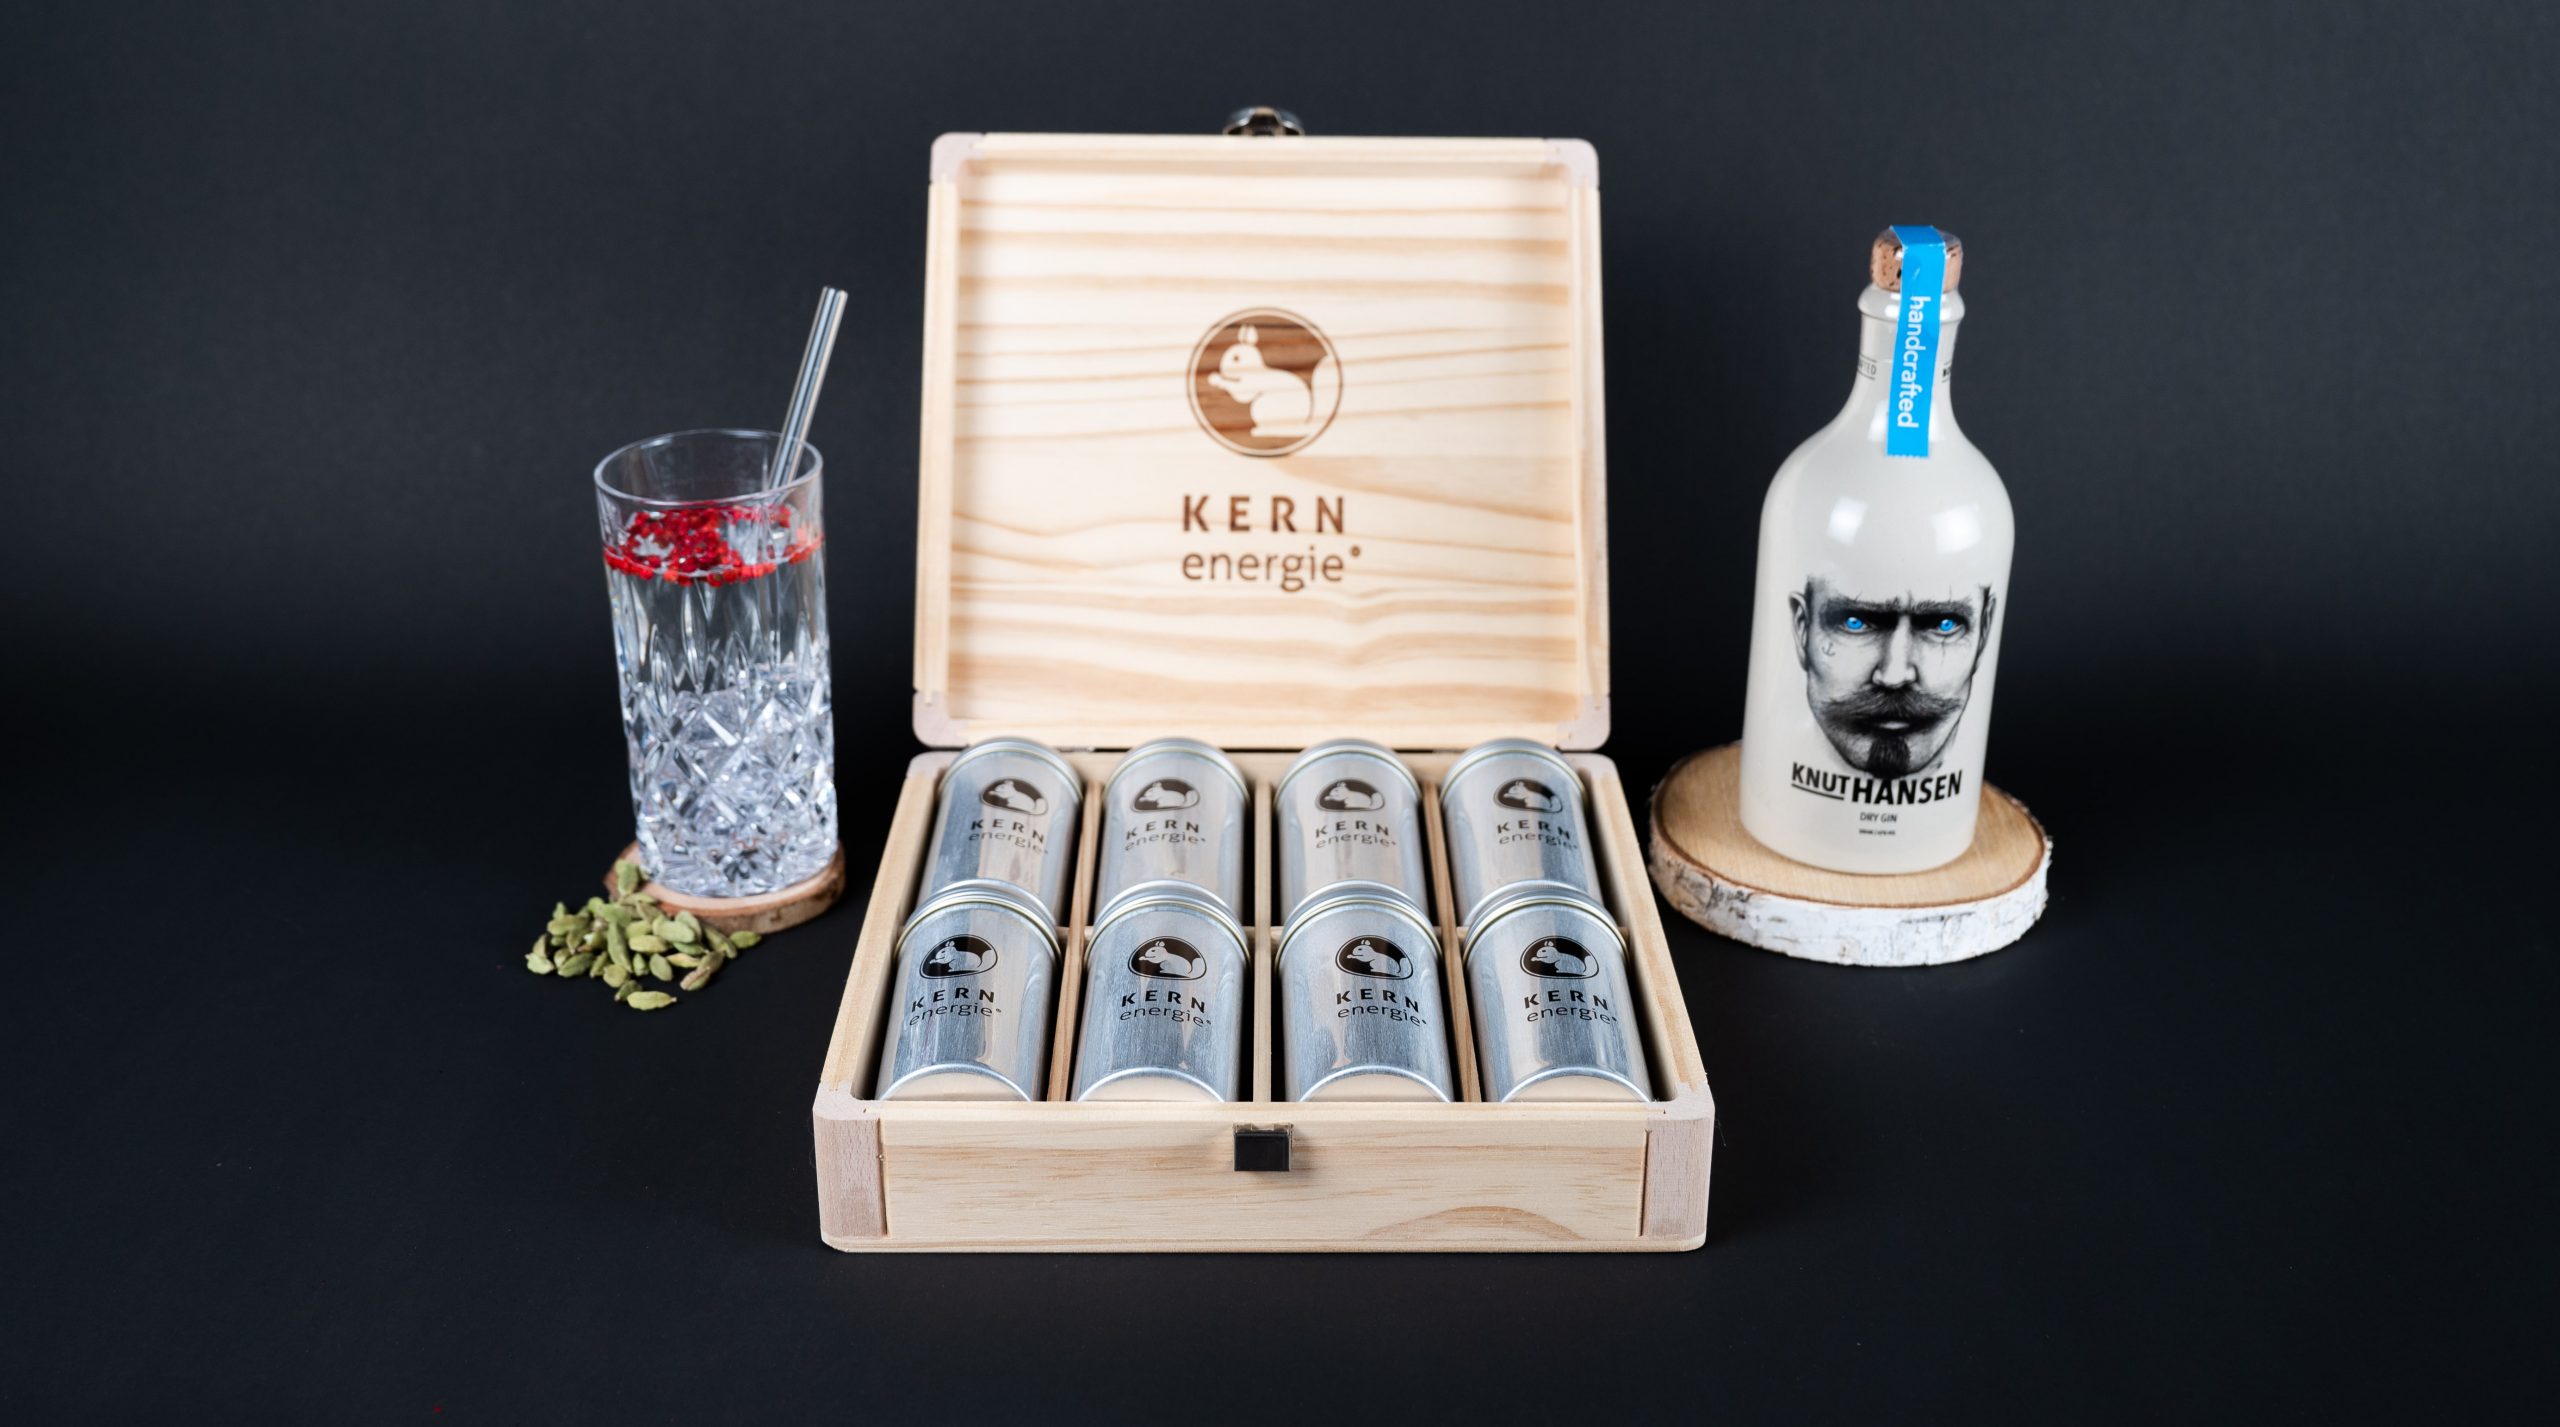 Das KERNenergie Zutaten Set in der edlen Holzbox zwischen einem Cocktail Glas und einer Flasche Knut Hansen vor schwarzem Hintergrund